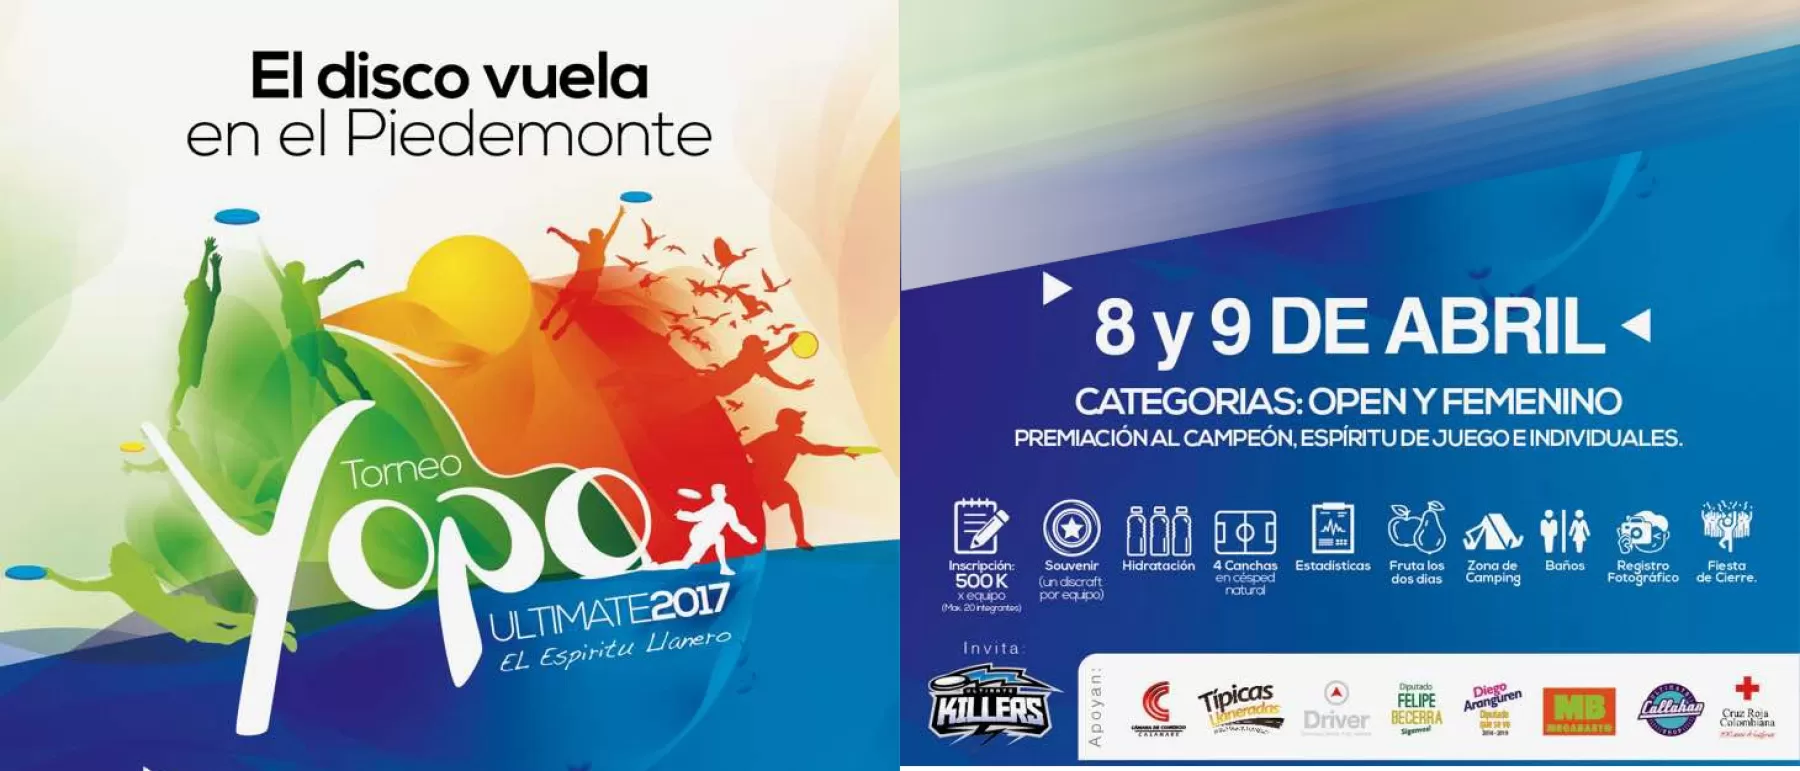 Equipos de Ultimate - Frisbee procedentes de cinco departamentos (Boyacá, Cundinamarca, Santander, Meta y Casanare) se darán cita en Yopal este 8 y 9 de abril.